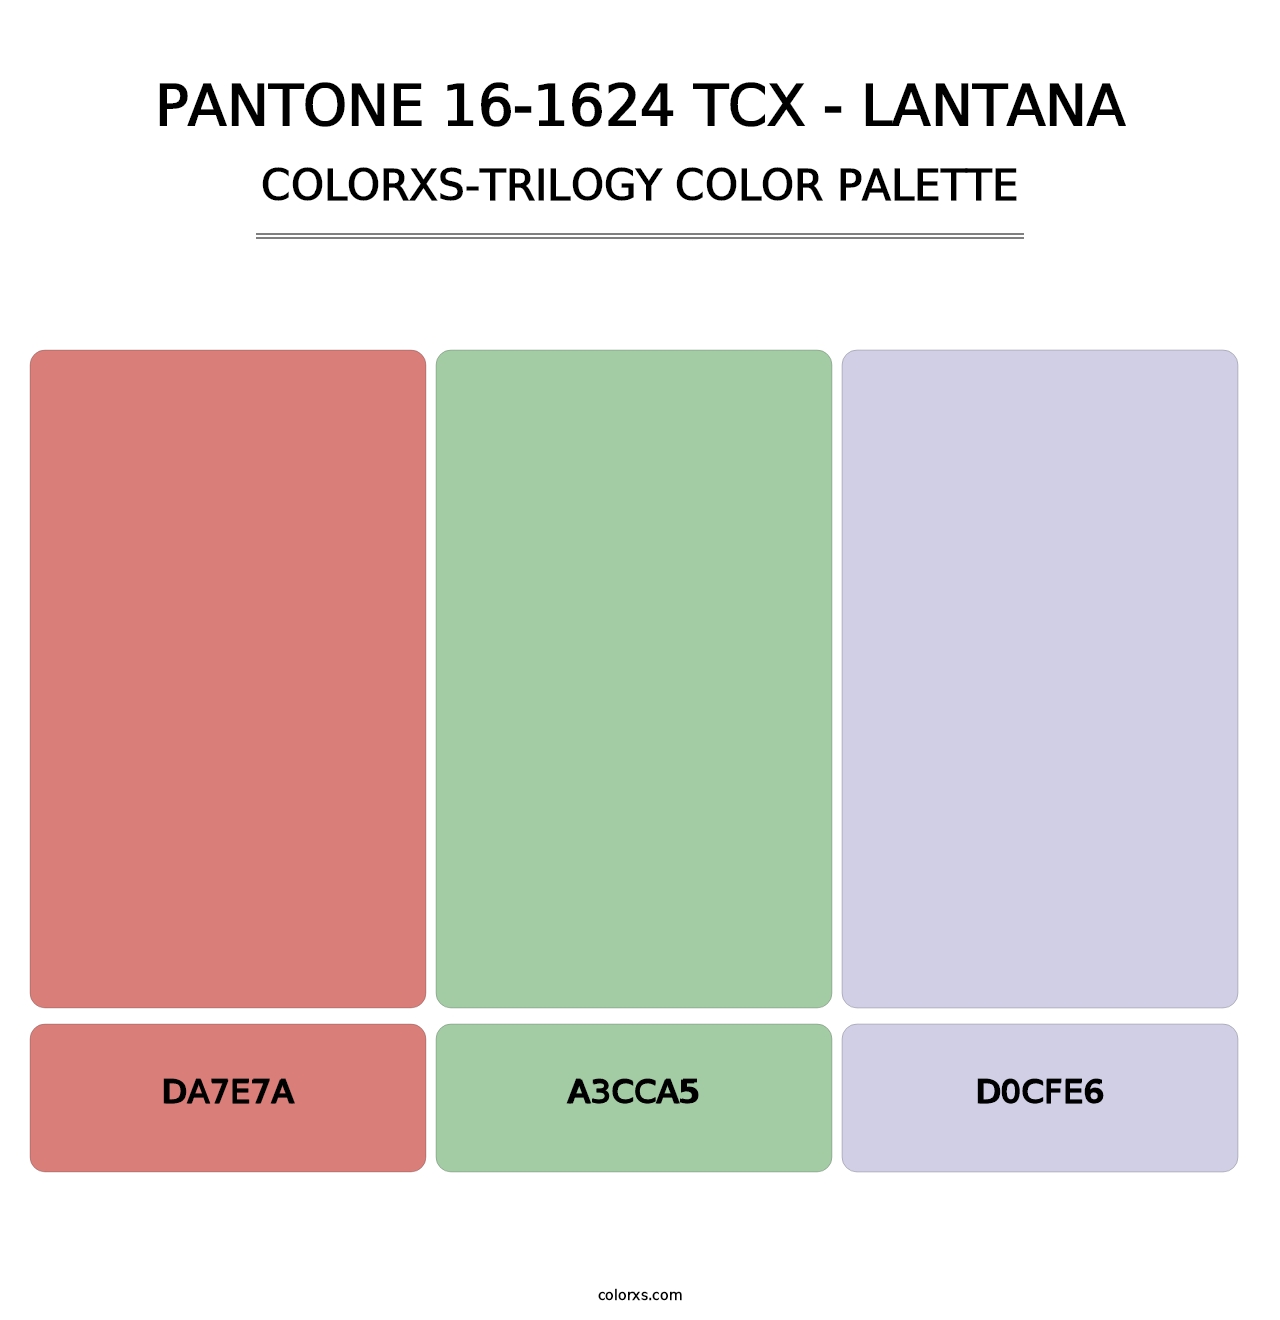 PANTONE 16-1624 TCX - Lantana - Colorxs Trilogy Palette